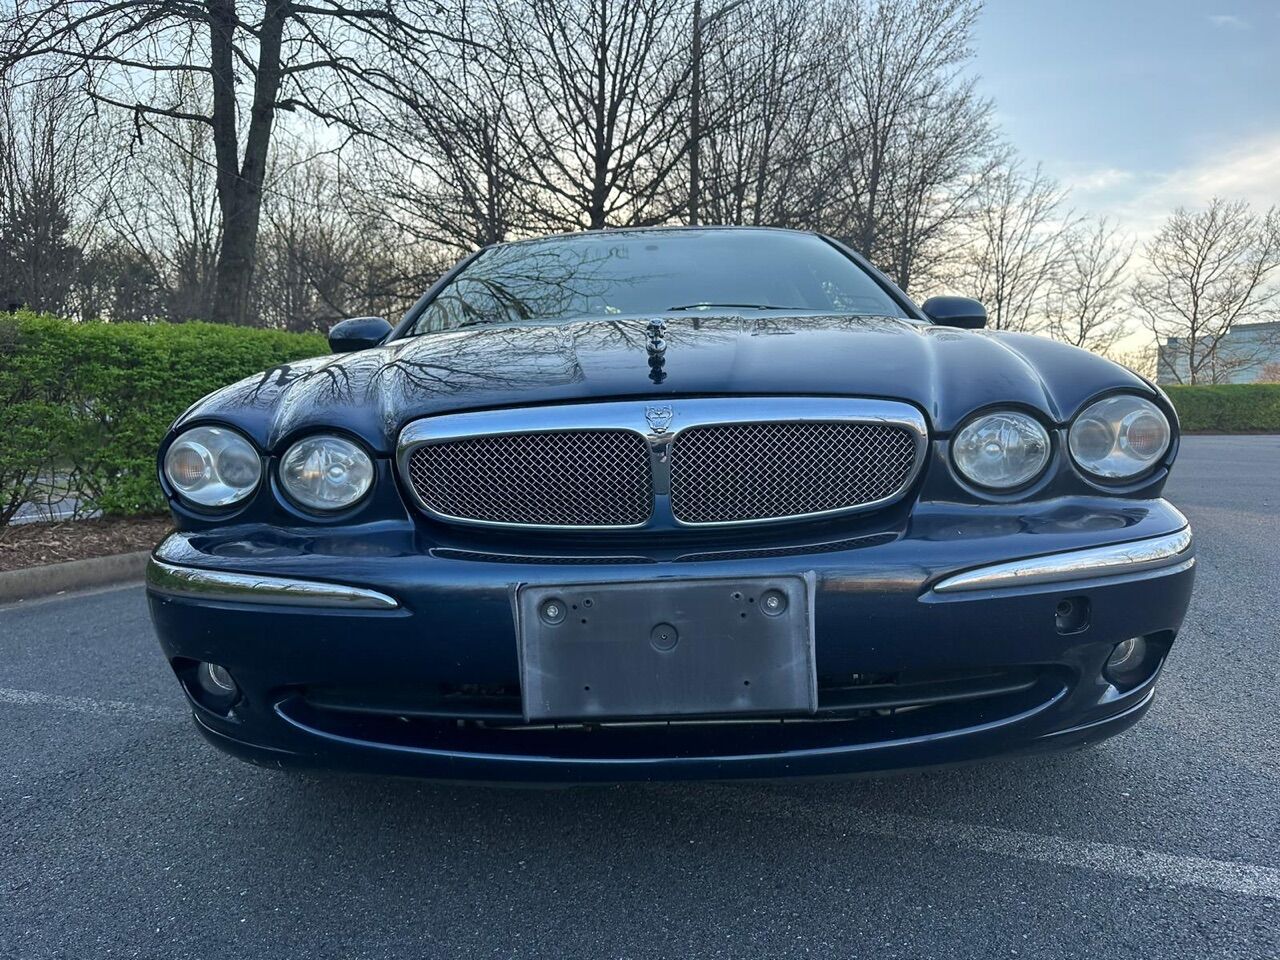 Jaguar X-Type For Sale - Carsforsale.com®